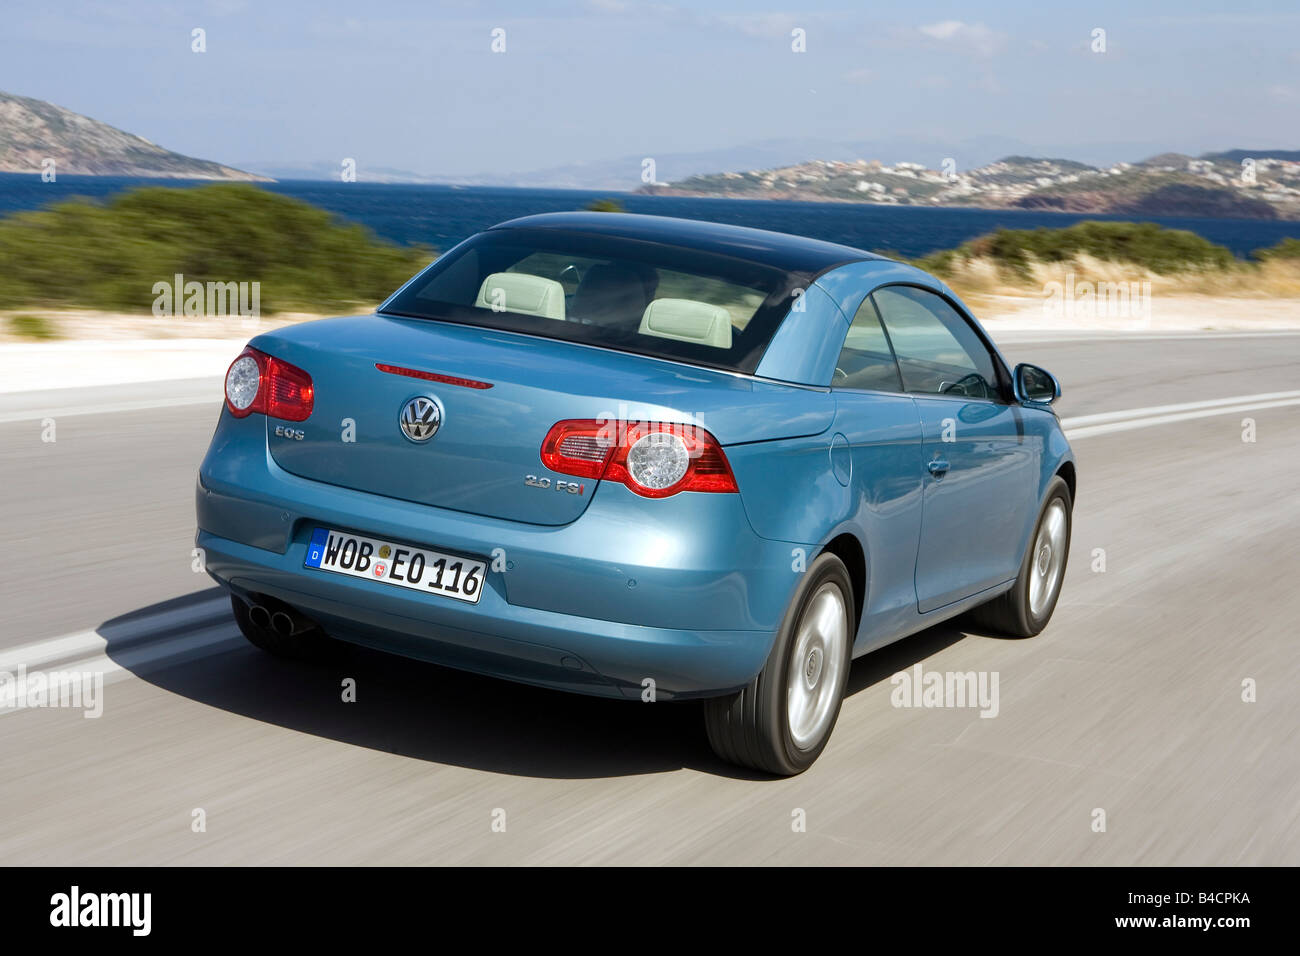 VW Volkswagen Eos 2.0 FSI, l'année de modèle 2006- hellblue, déménagement, la diagonale de l'arrière, vue arrière, landsapprox.e, Meer, l'eau, Somme Banque D'Images